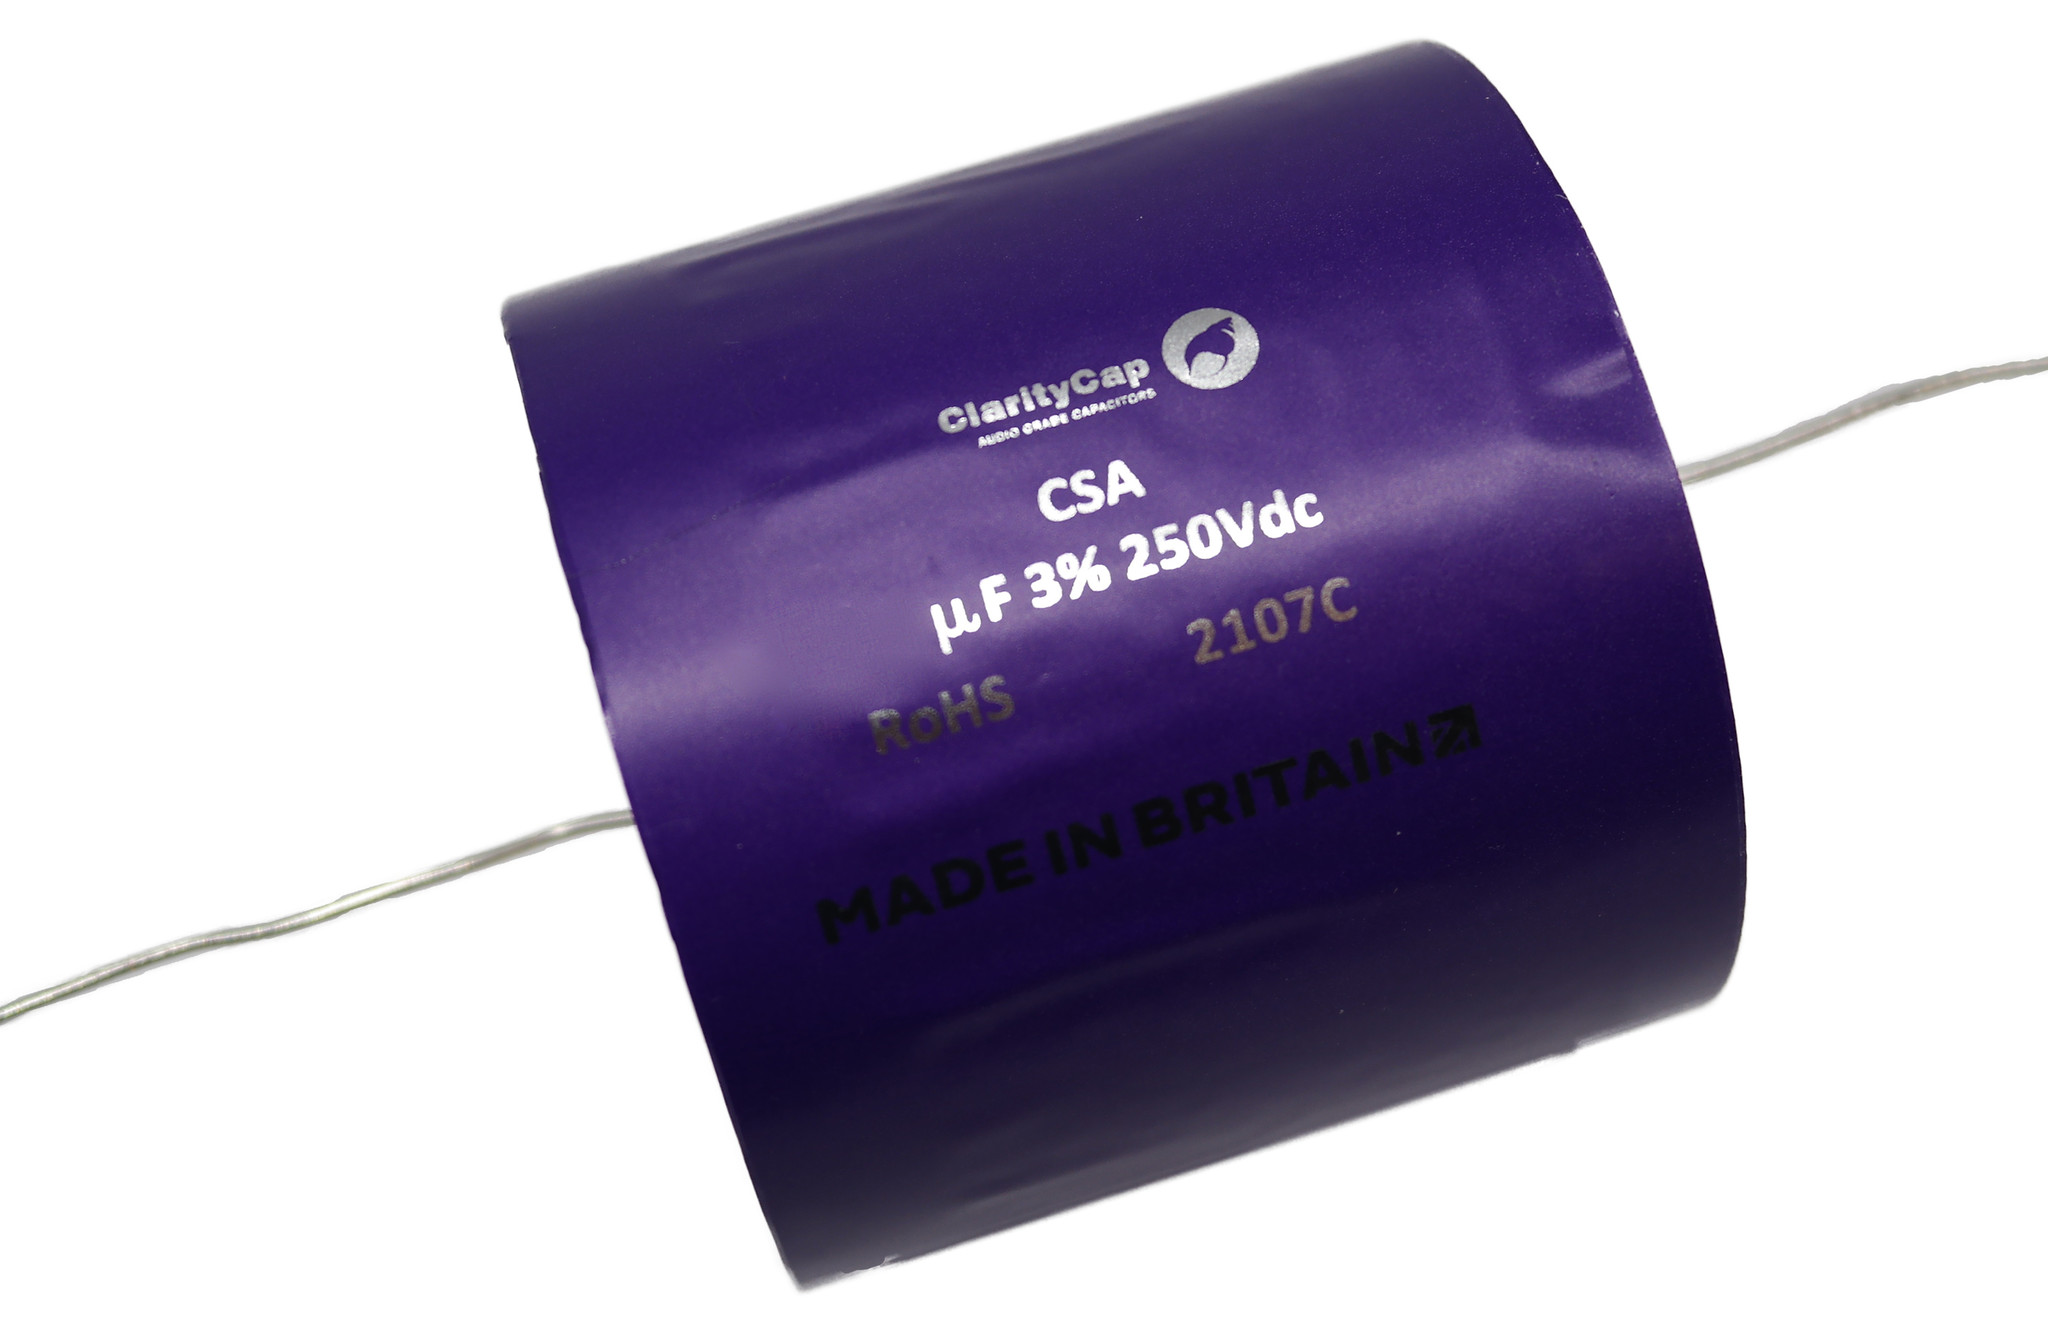 Condensatoare - Condensator film ClarityCap CSA100uH250Vdc| 100 µF | 3% | 250 V, audioclub.ro